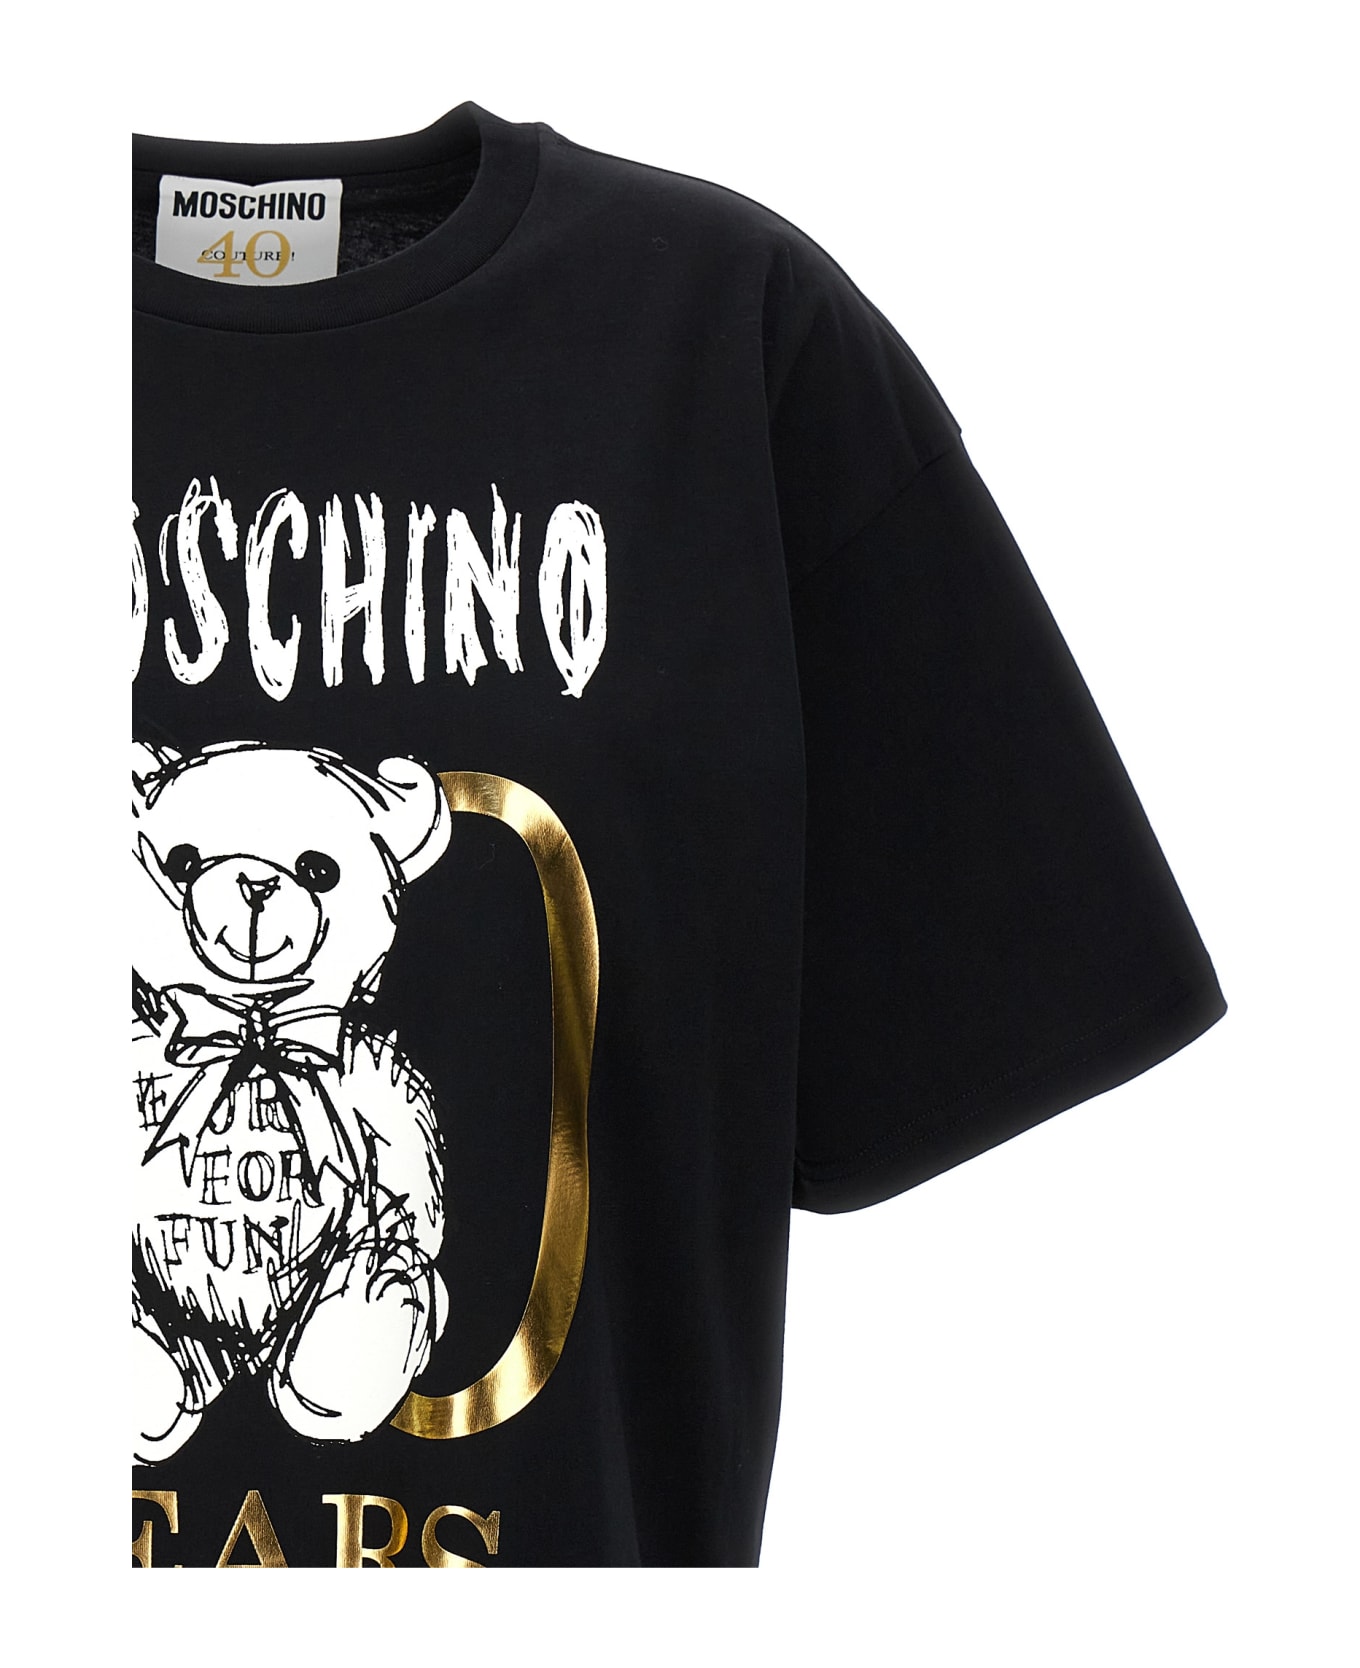 Moschino 'teddy 40 Years Of Love' T-shirt - Black